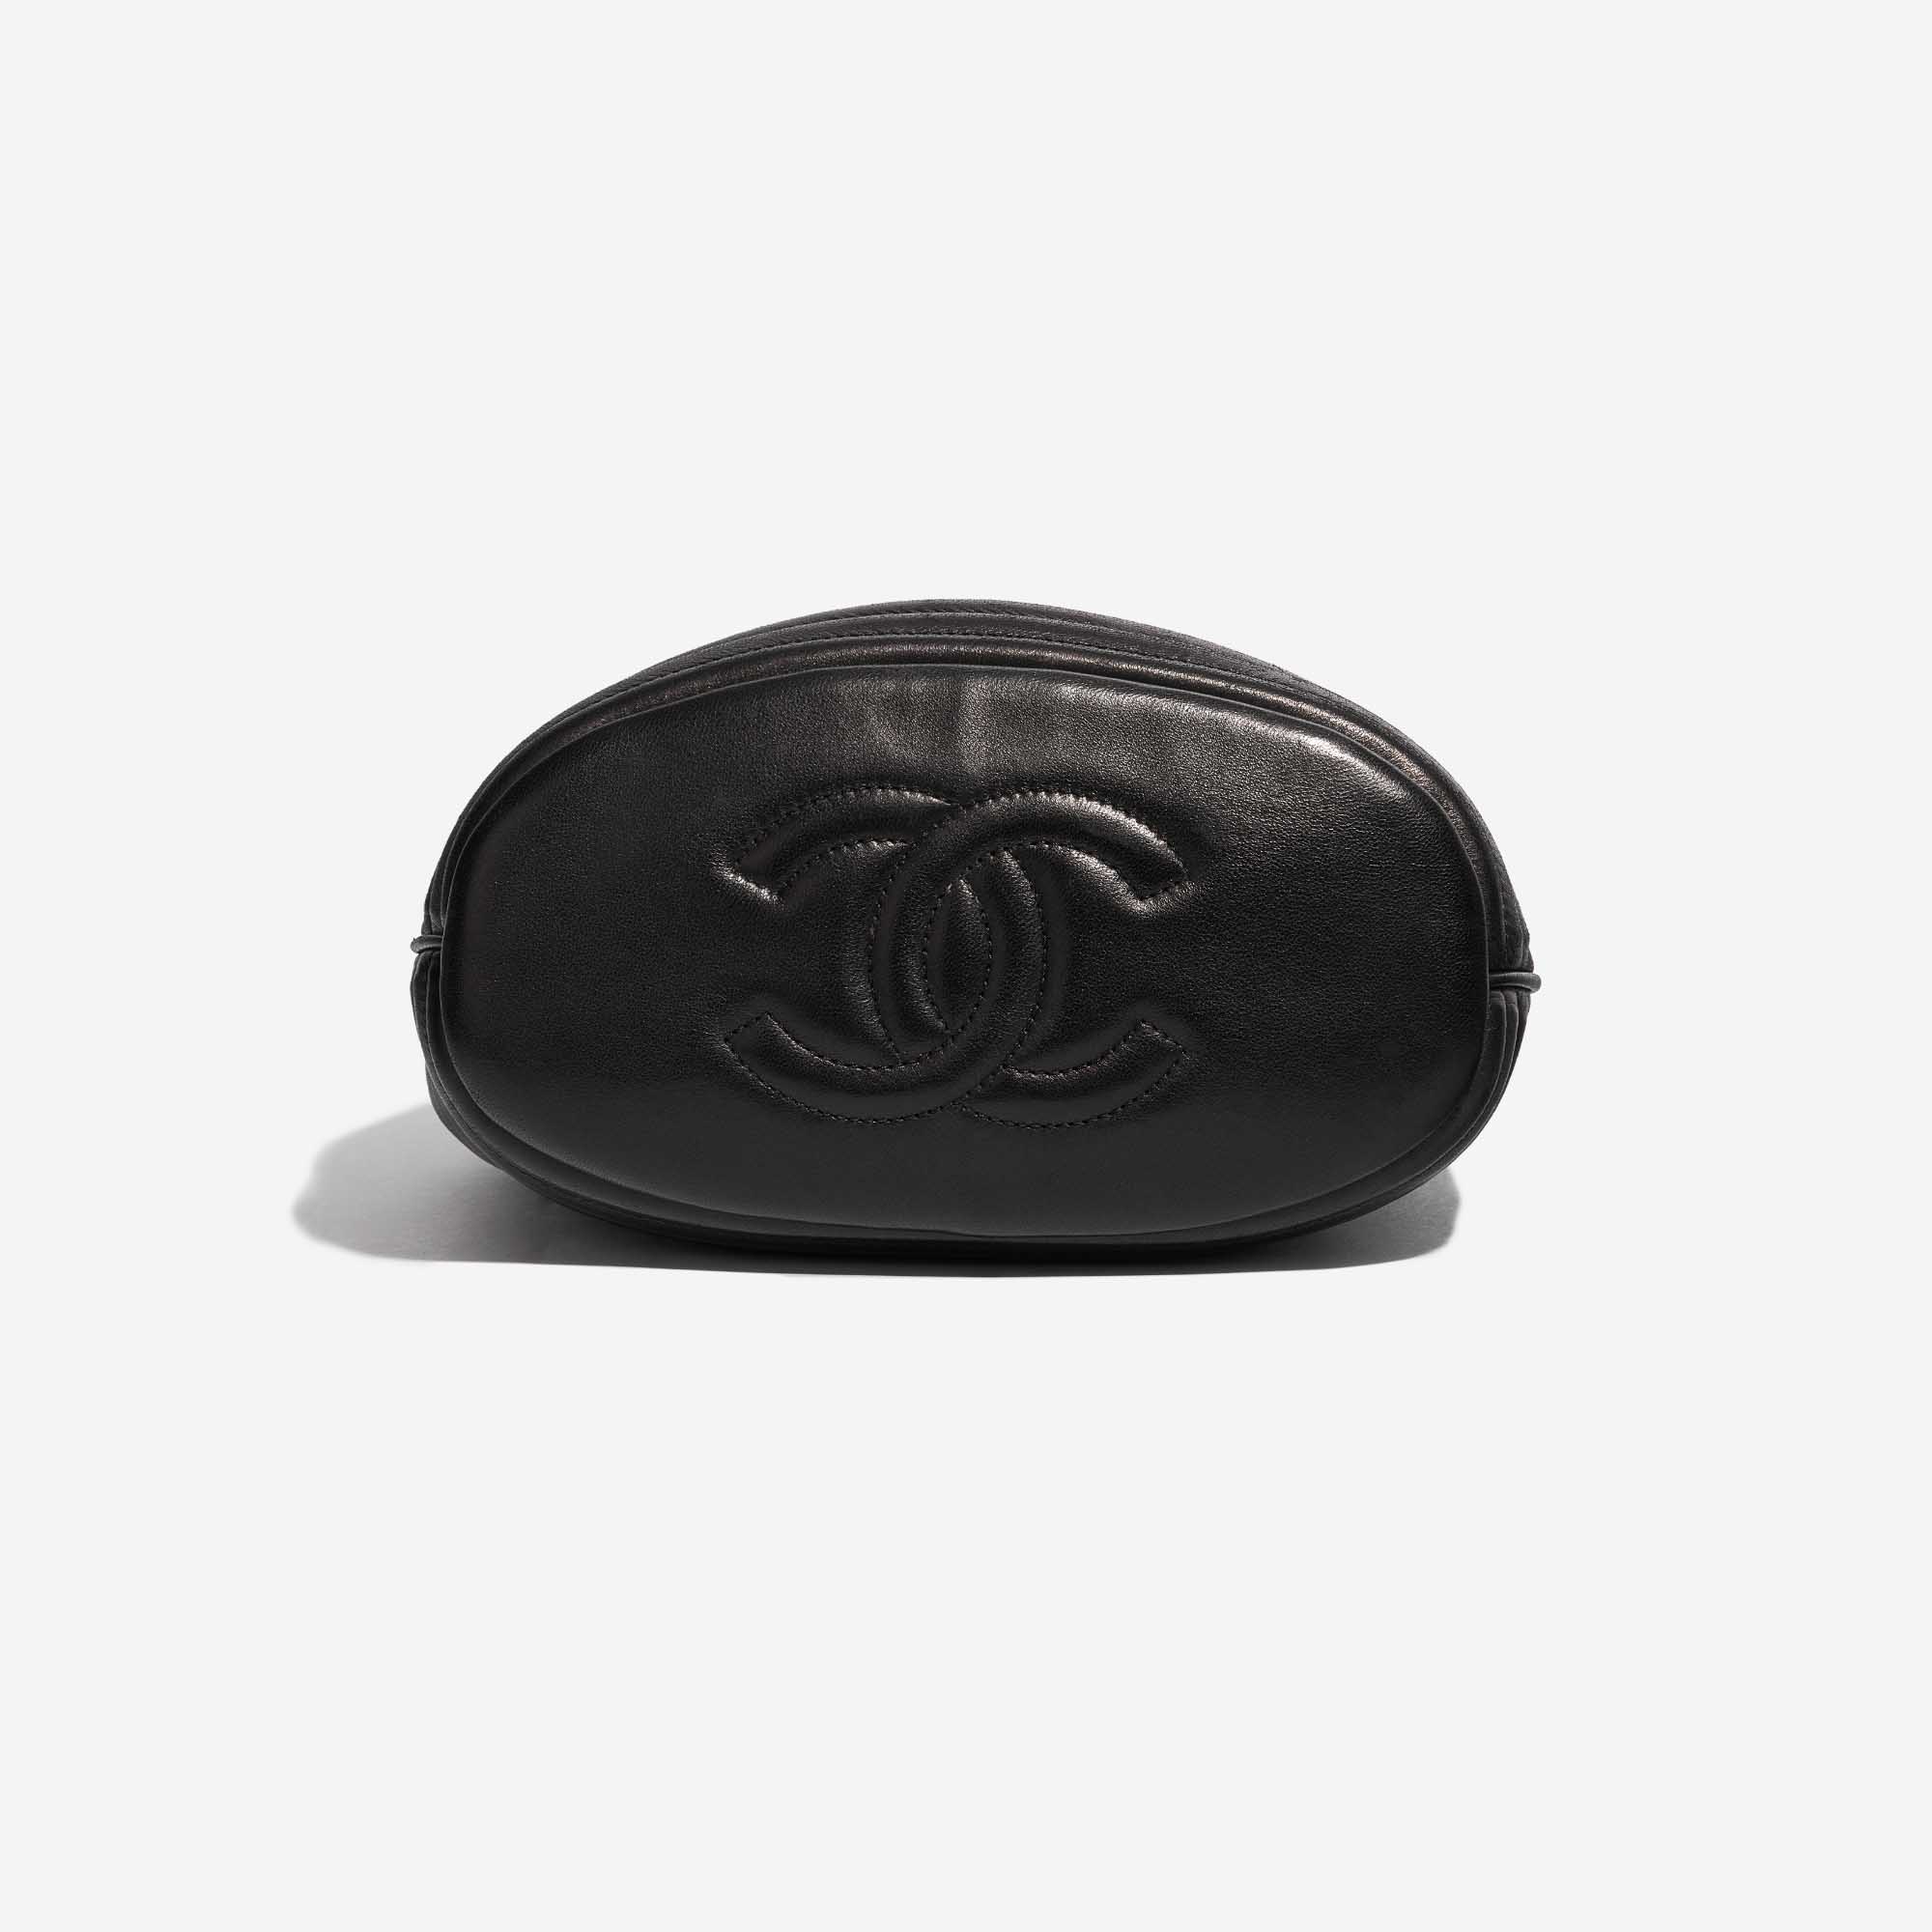 Pre-owned Chanel Tasche Drawstring Bucket Lammleder Black Black Bottom | Verkaufen Sie Ihre Designer-Tasche auf Saclab.com